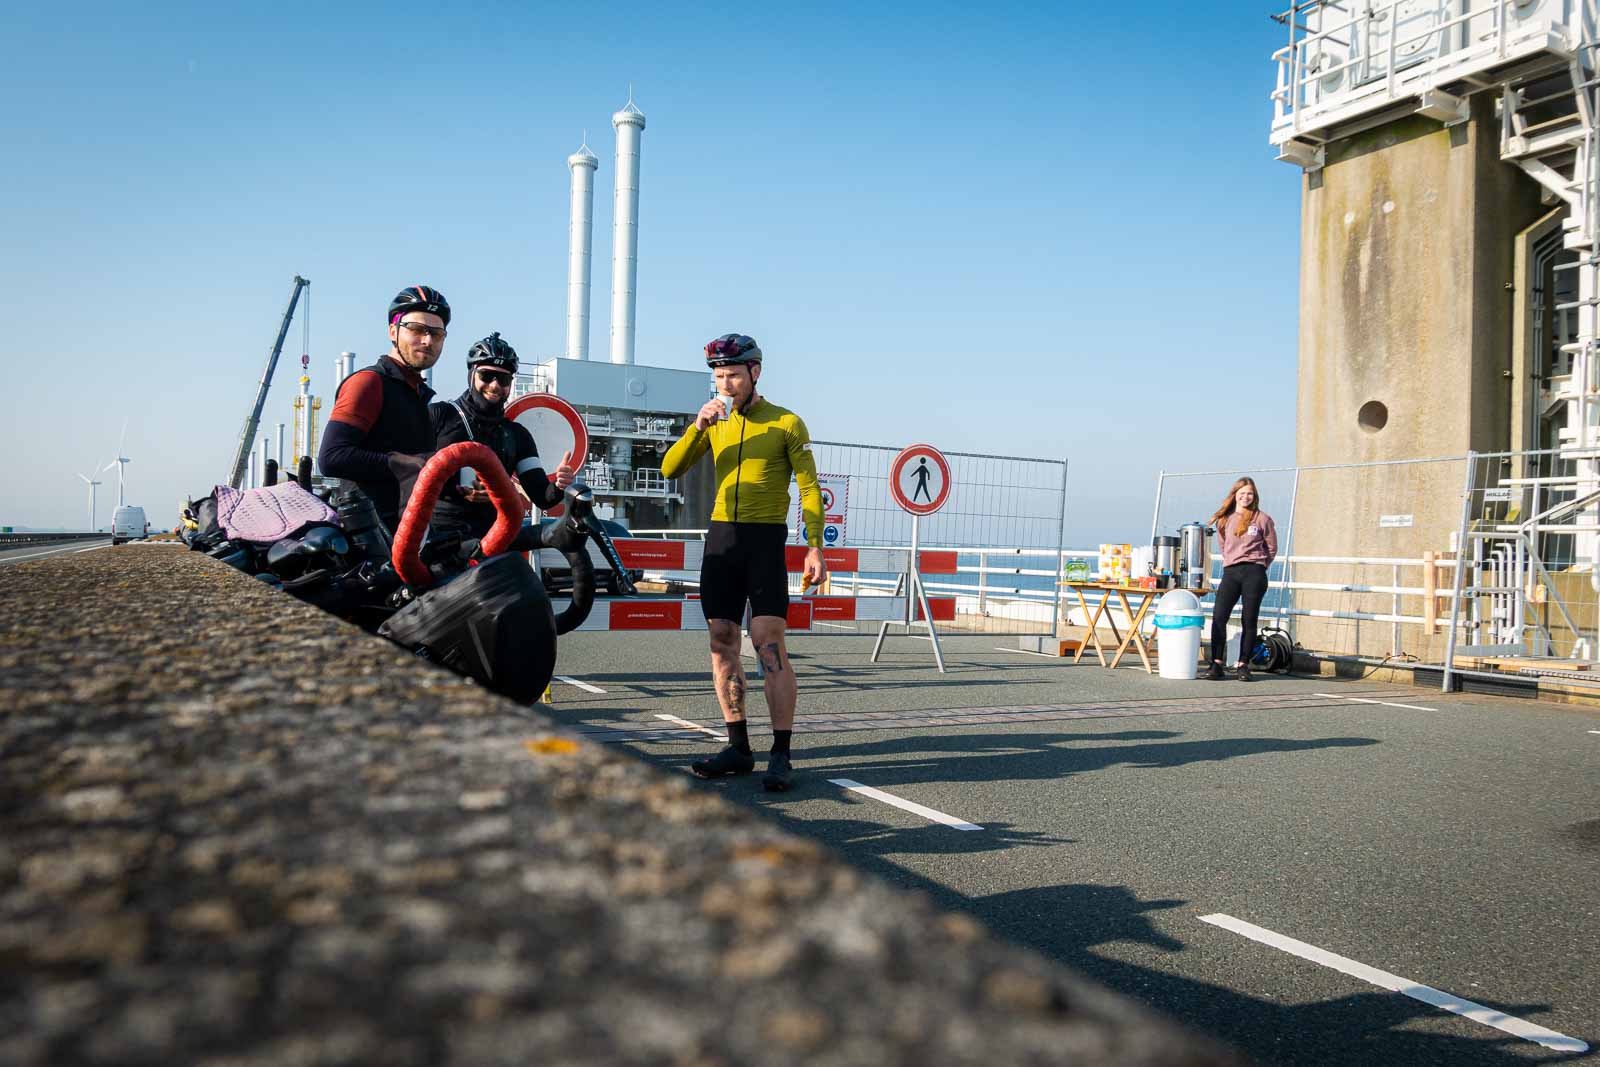 Tre ciclisti aspettano in un cantiere per la costruzione di un ponte, bevendo caffè e mangiando biscotti